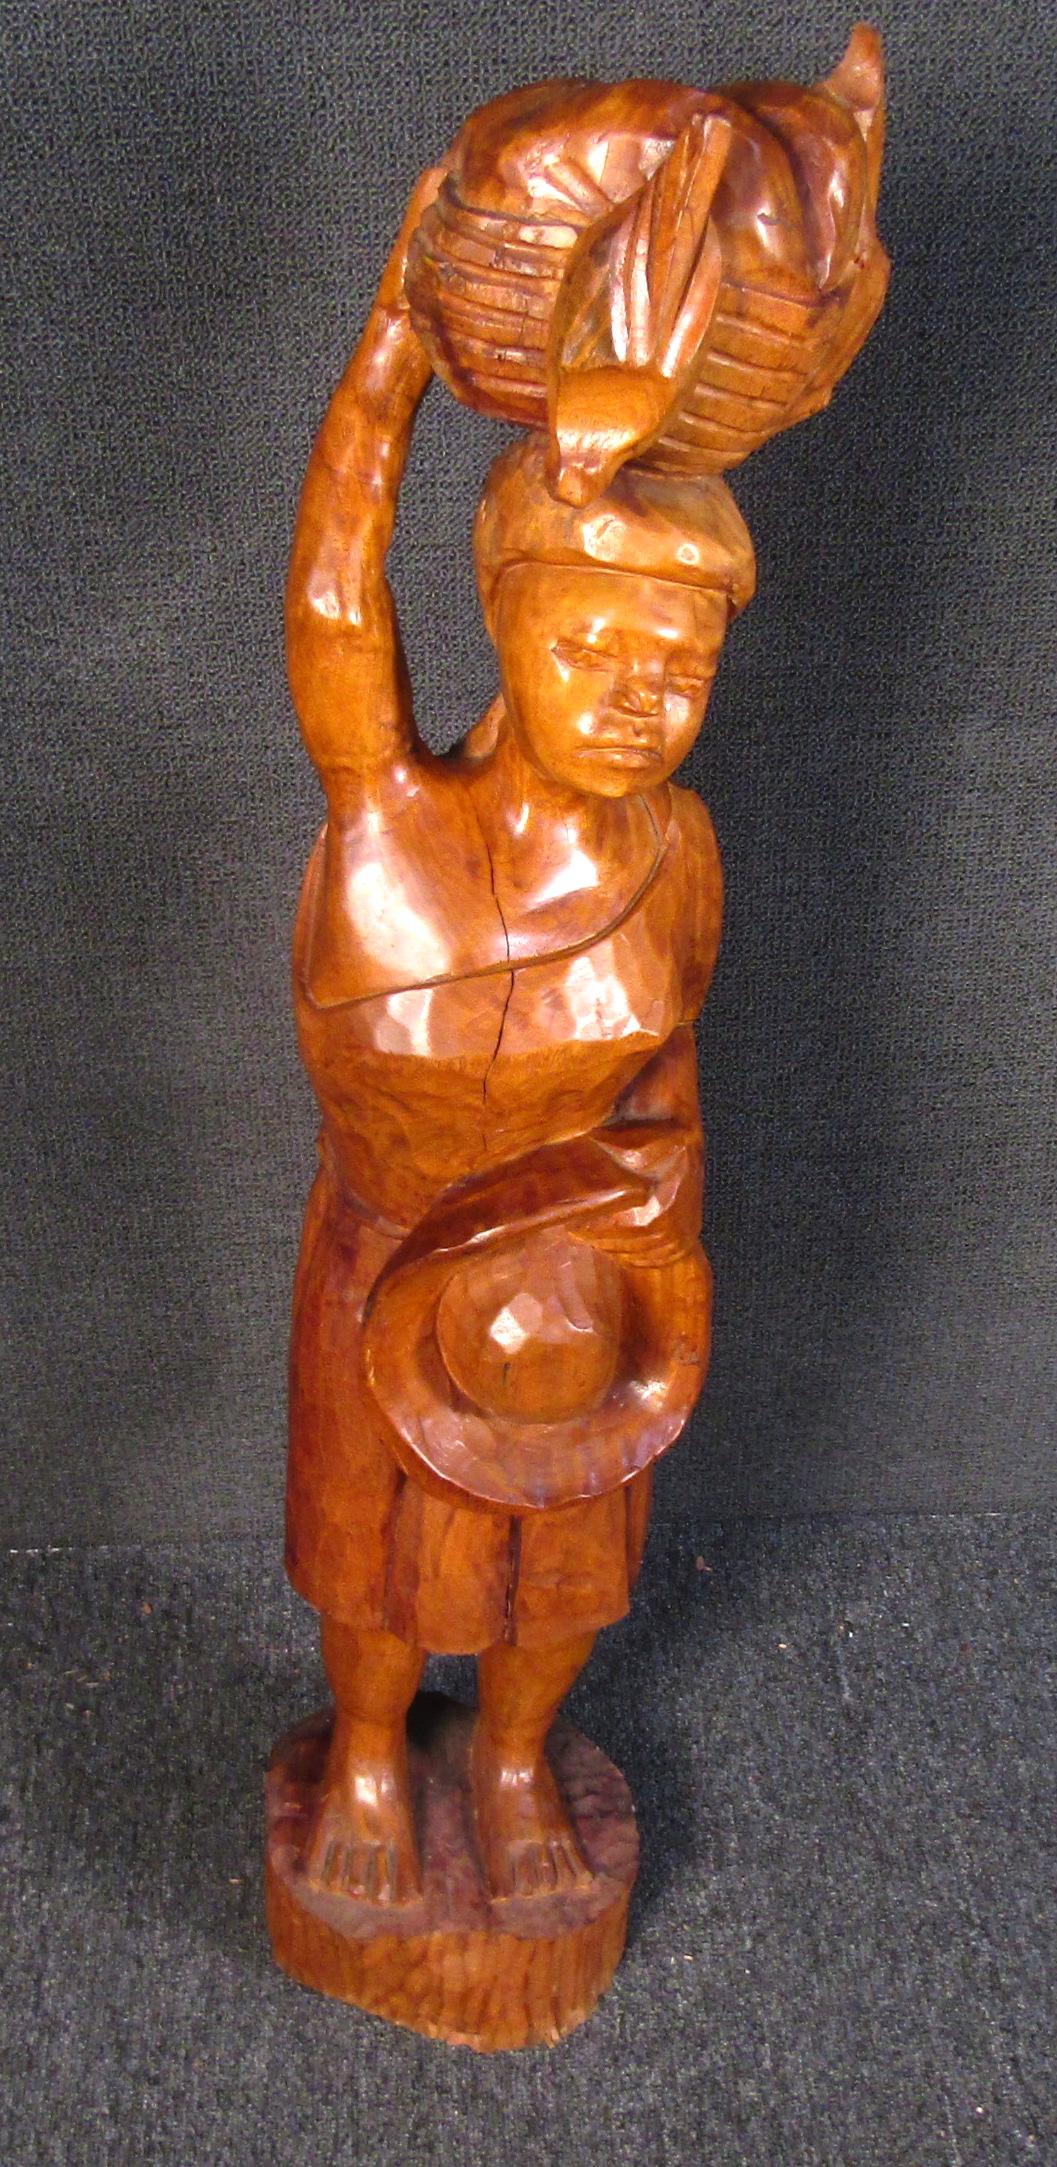 Magnifique sculpture africaine en bois, unique en son genre, représentant une femme portant un panier et un chapeau. Collectional en bois richement teinté, cette étonnante sculpture réalisée à la main sera à coup sûr une pièce maîtresse de toute